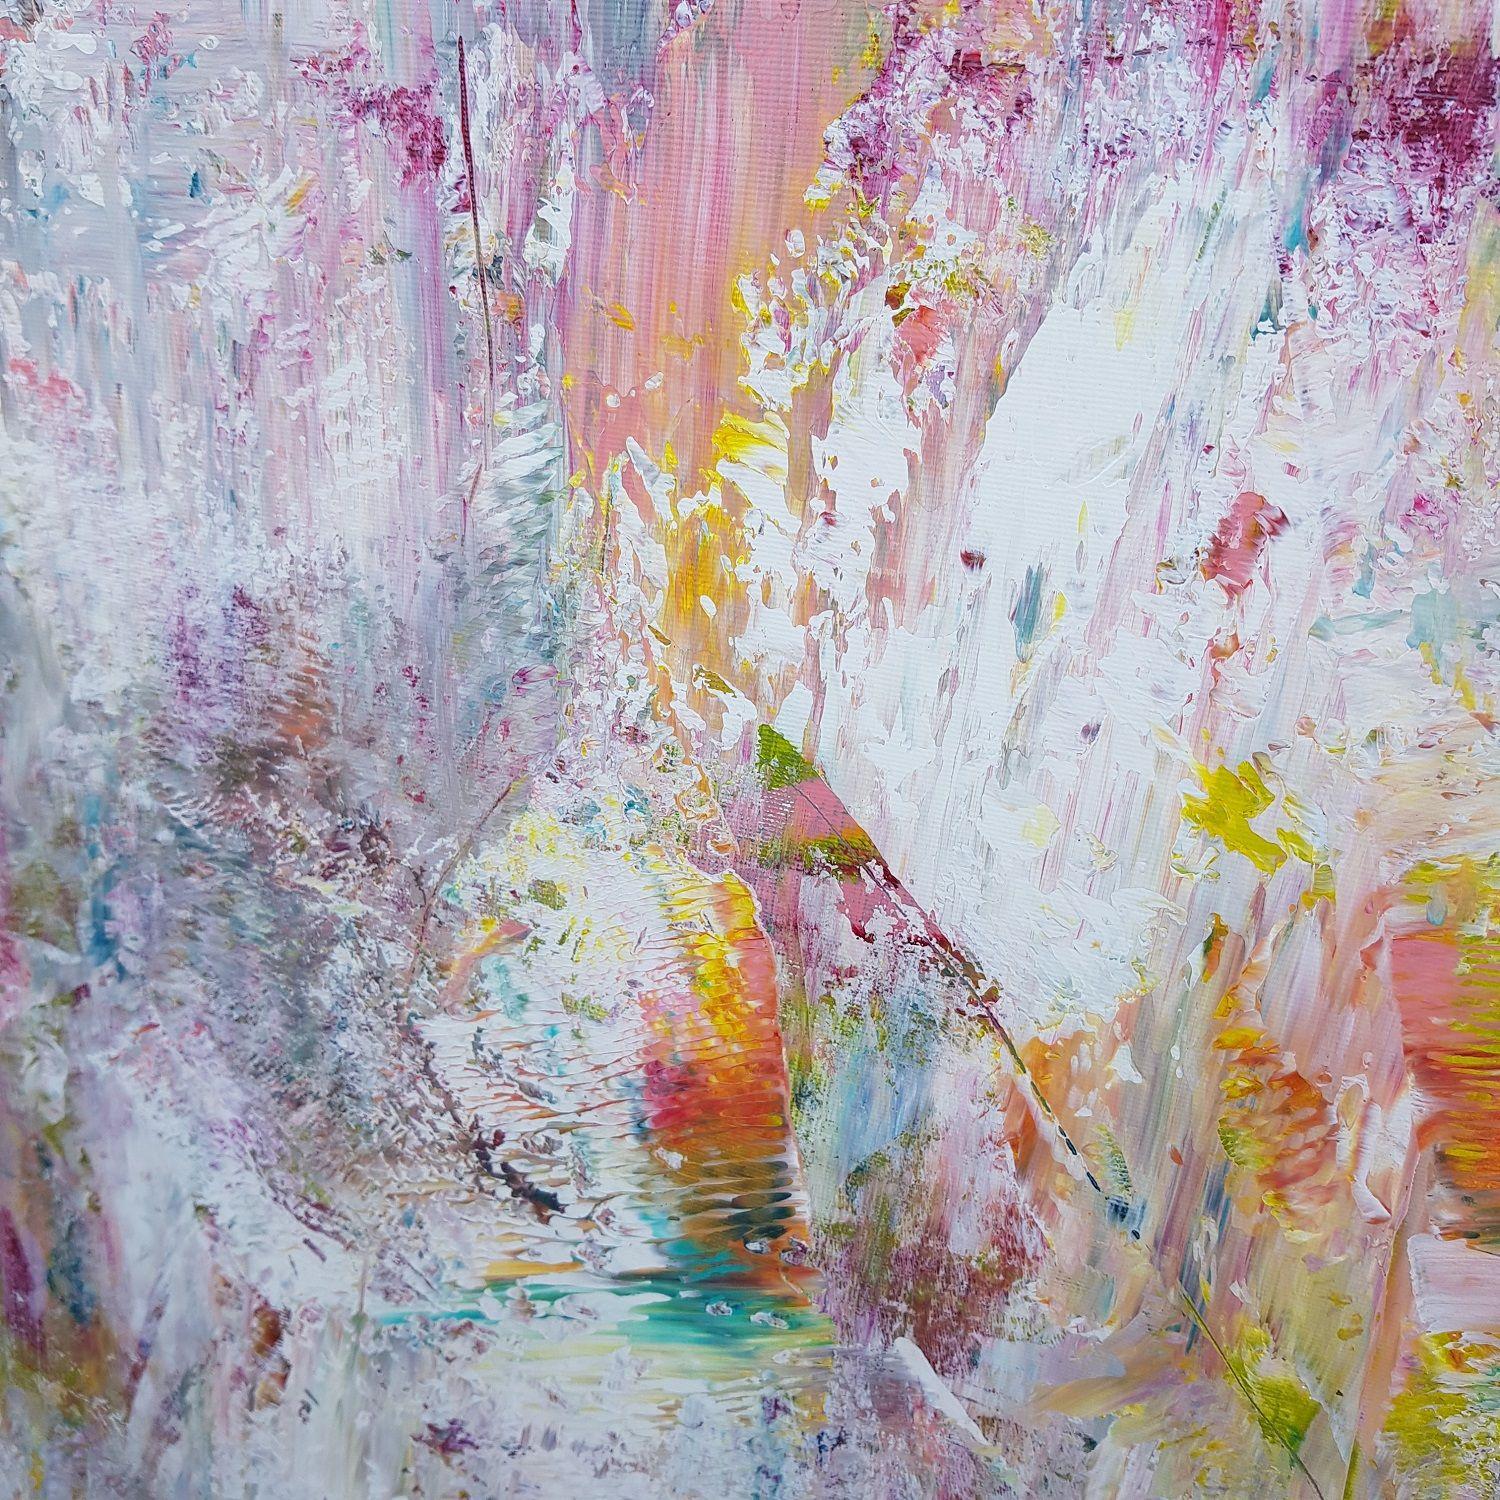   Une peinture abstraite originale et colorée, unique en son genre, avec une texture douce.  Inspiré par les paysages d'été, les prairies, les fleurs, les longues journées ensoleillées, les danses nocturnes et la musique.    Plusieurs couches